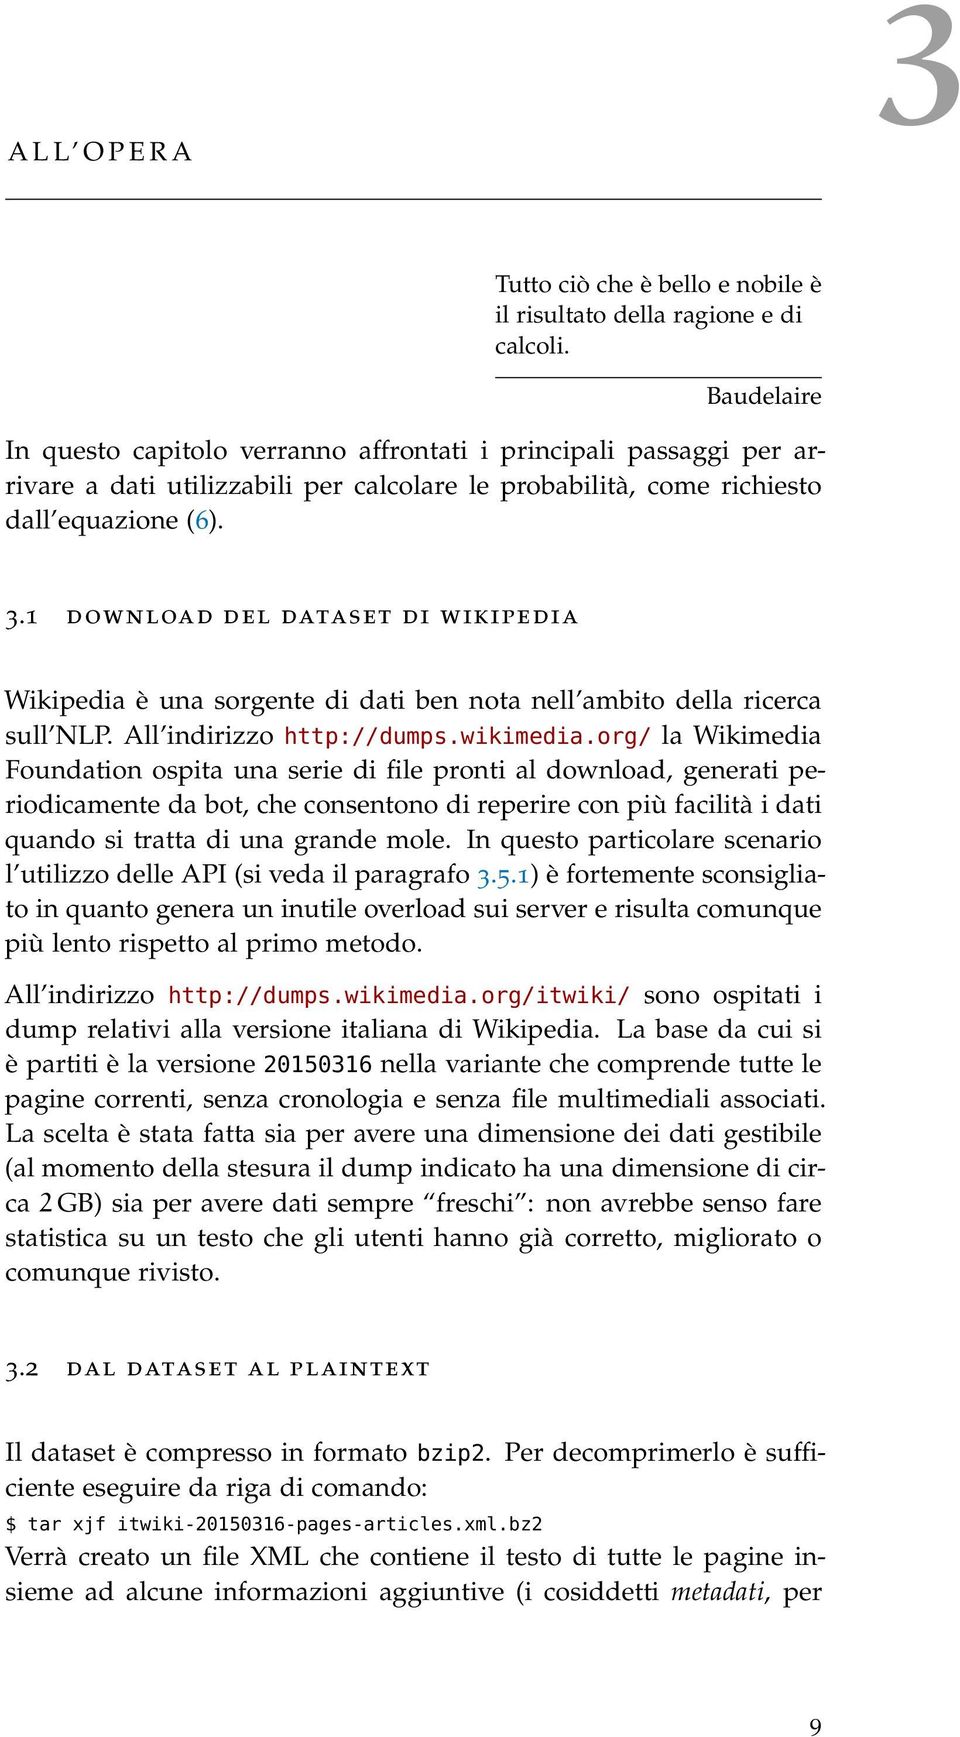 1 download del dataset di wikipedia Wikipedia è una sorgente di dati ben nota nell ambito della ricerca sull NLP. All indirizzo http://dumps.wikimedia.